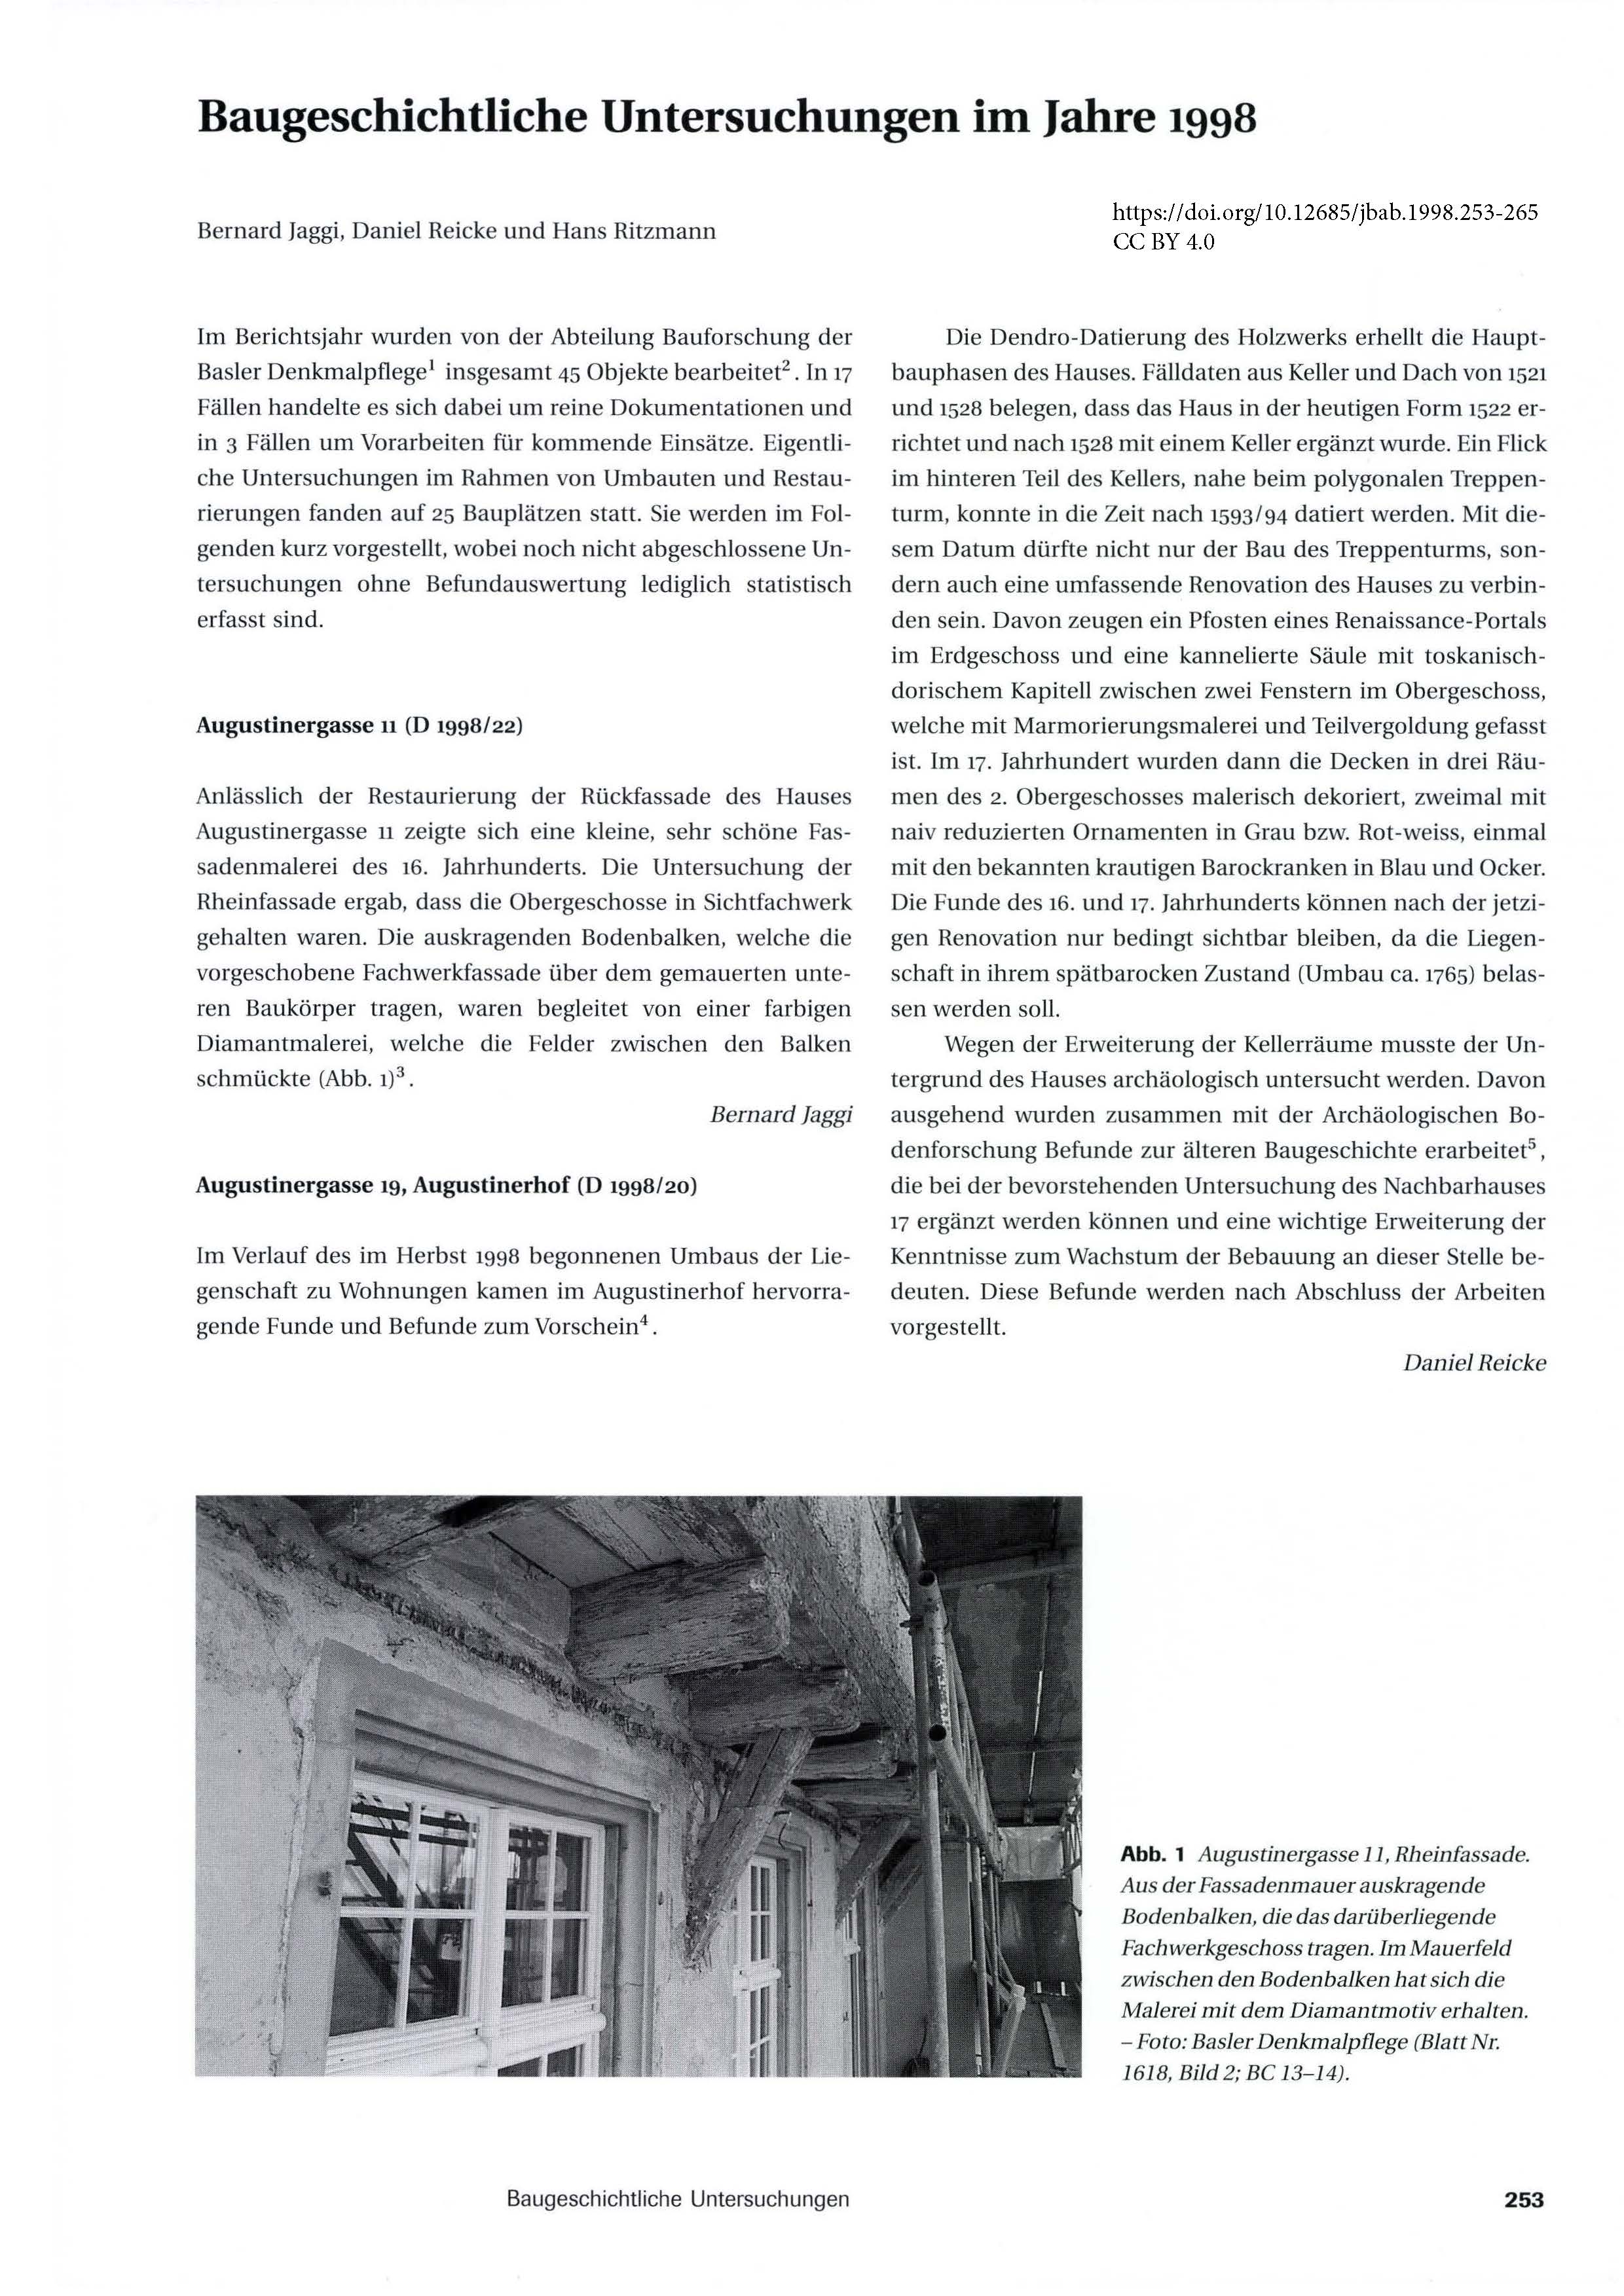 Erste Seite des Artikels zur Bauforschung im Jahr 1998